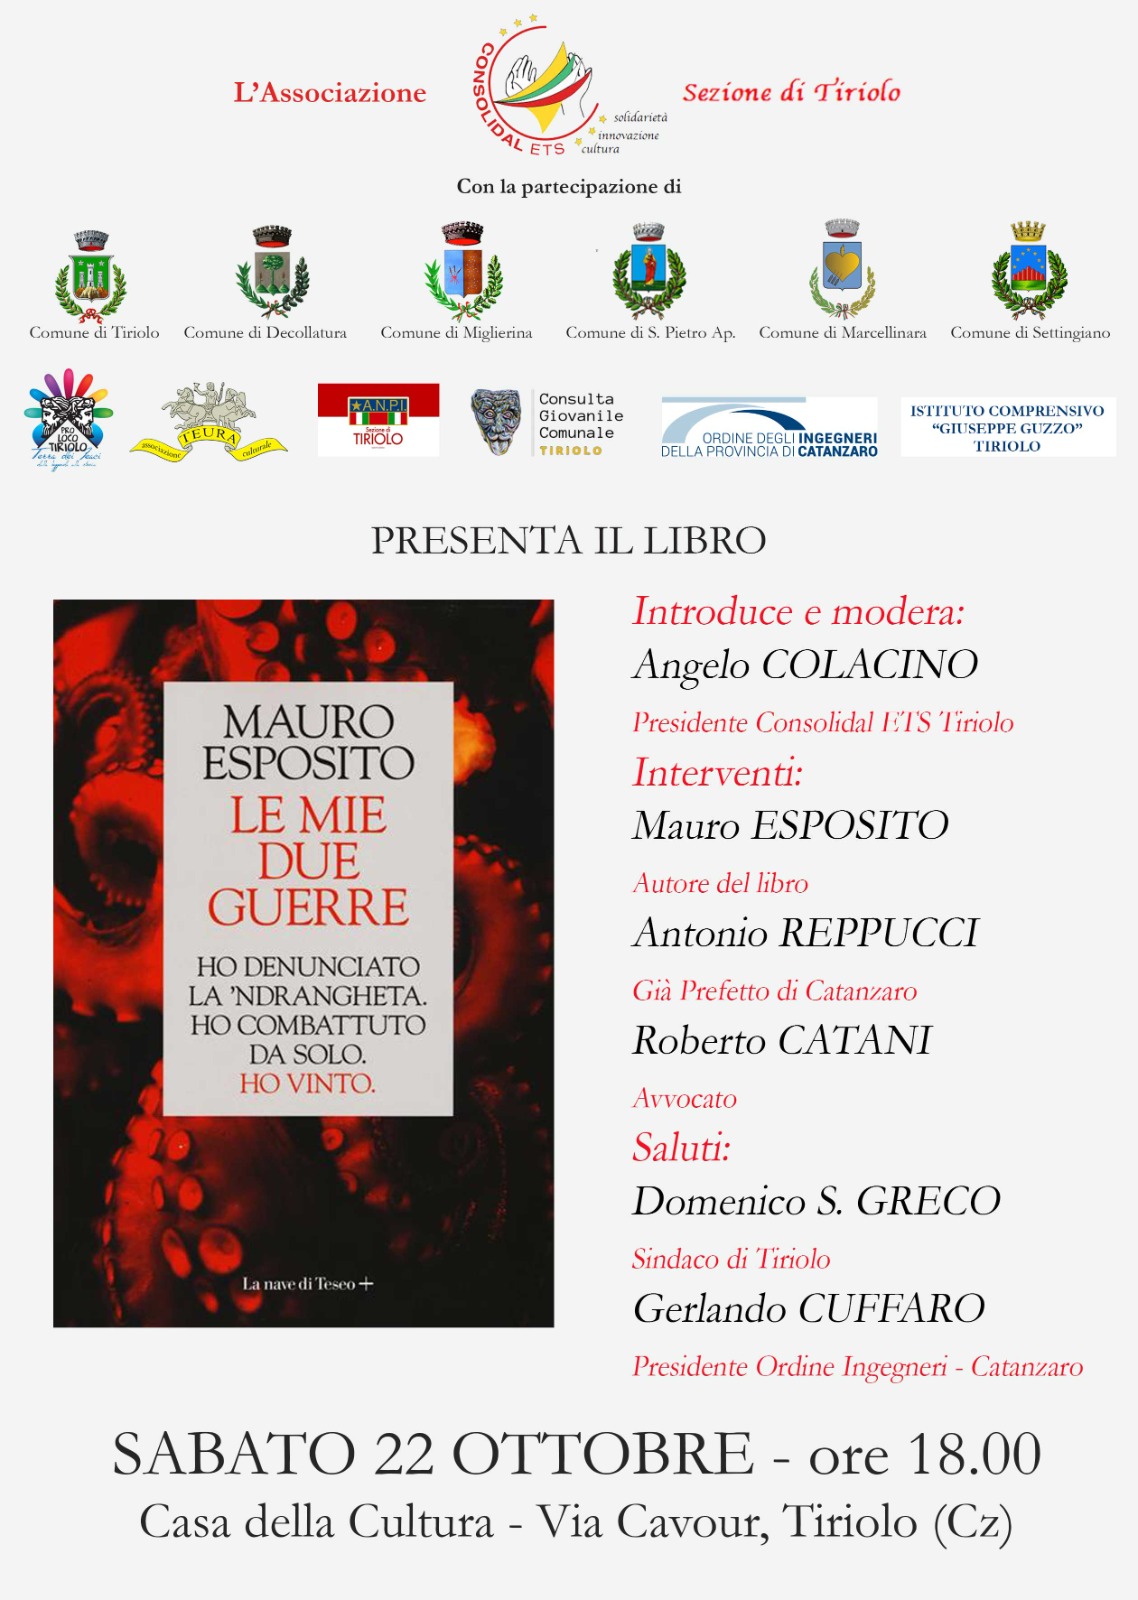 Tiriolo: la Consolidal presenta il libro "Le mie due guerre" di Mauro Esposito - Una storia di lotta alla mafia